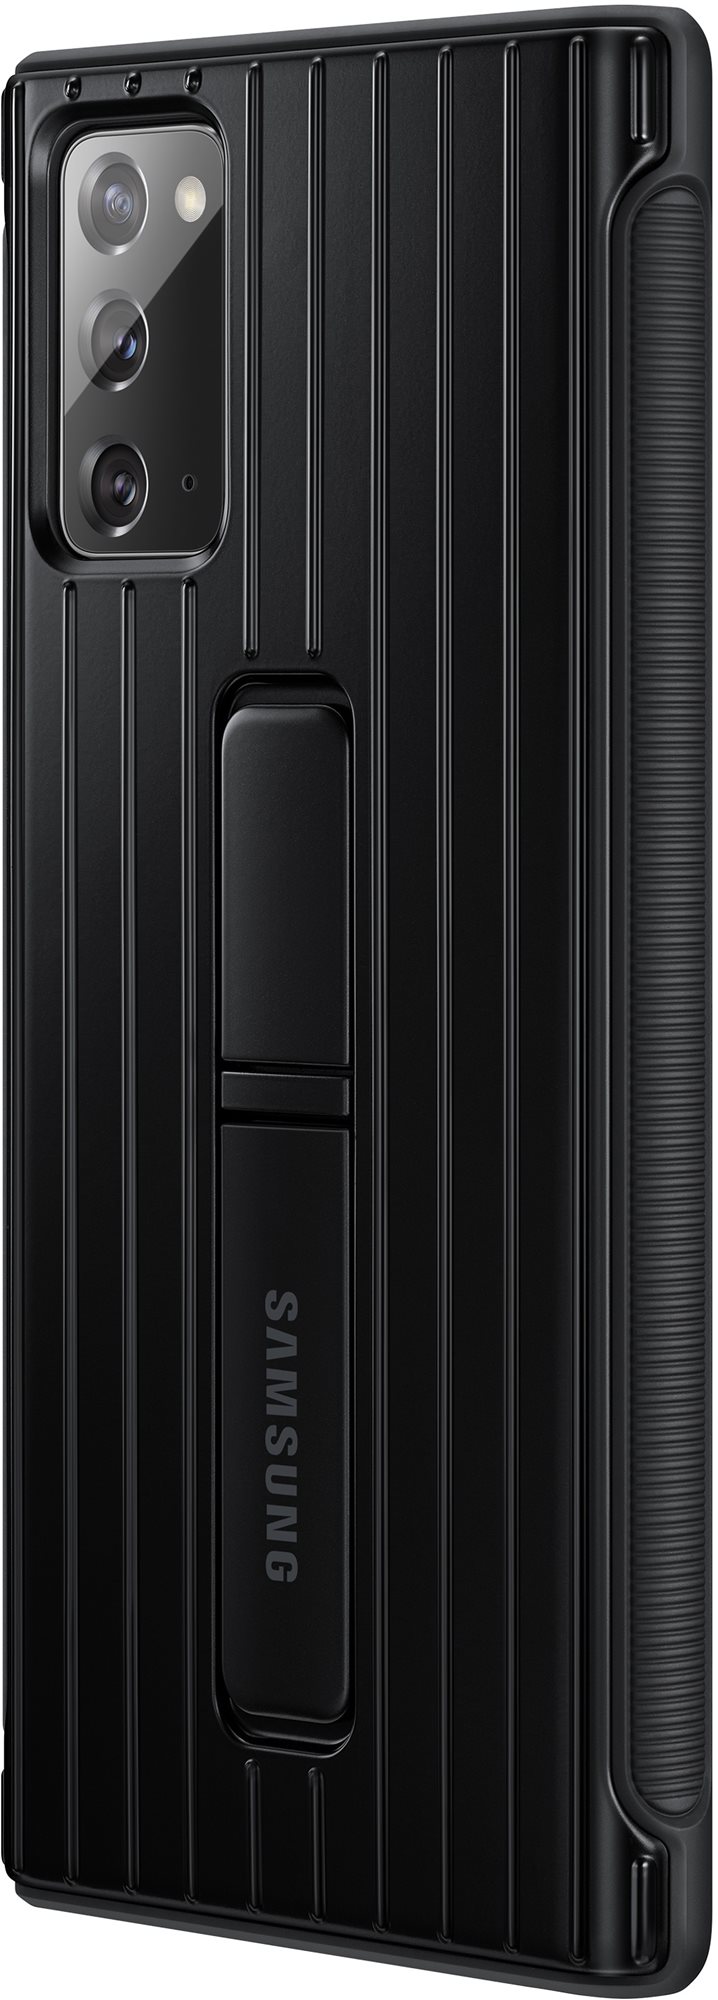 Telefon tok Samsung Galaxy Note20 fekete ütésálló állványos tok